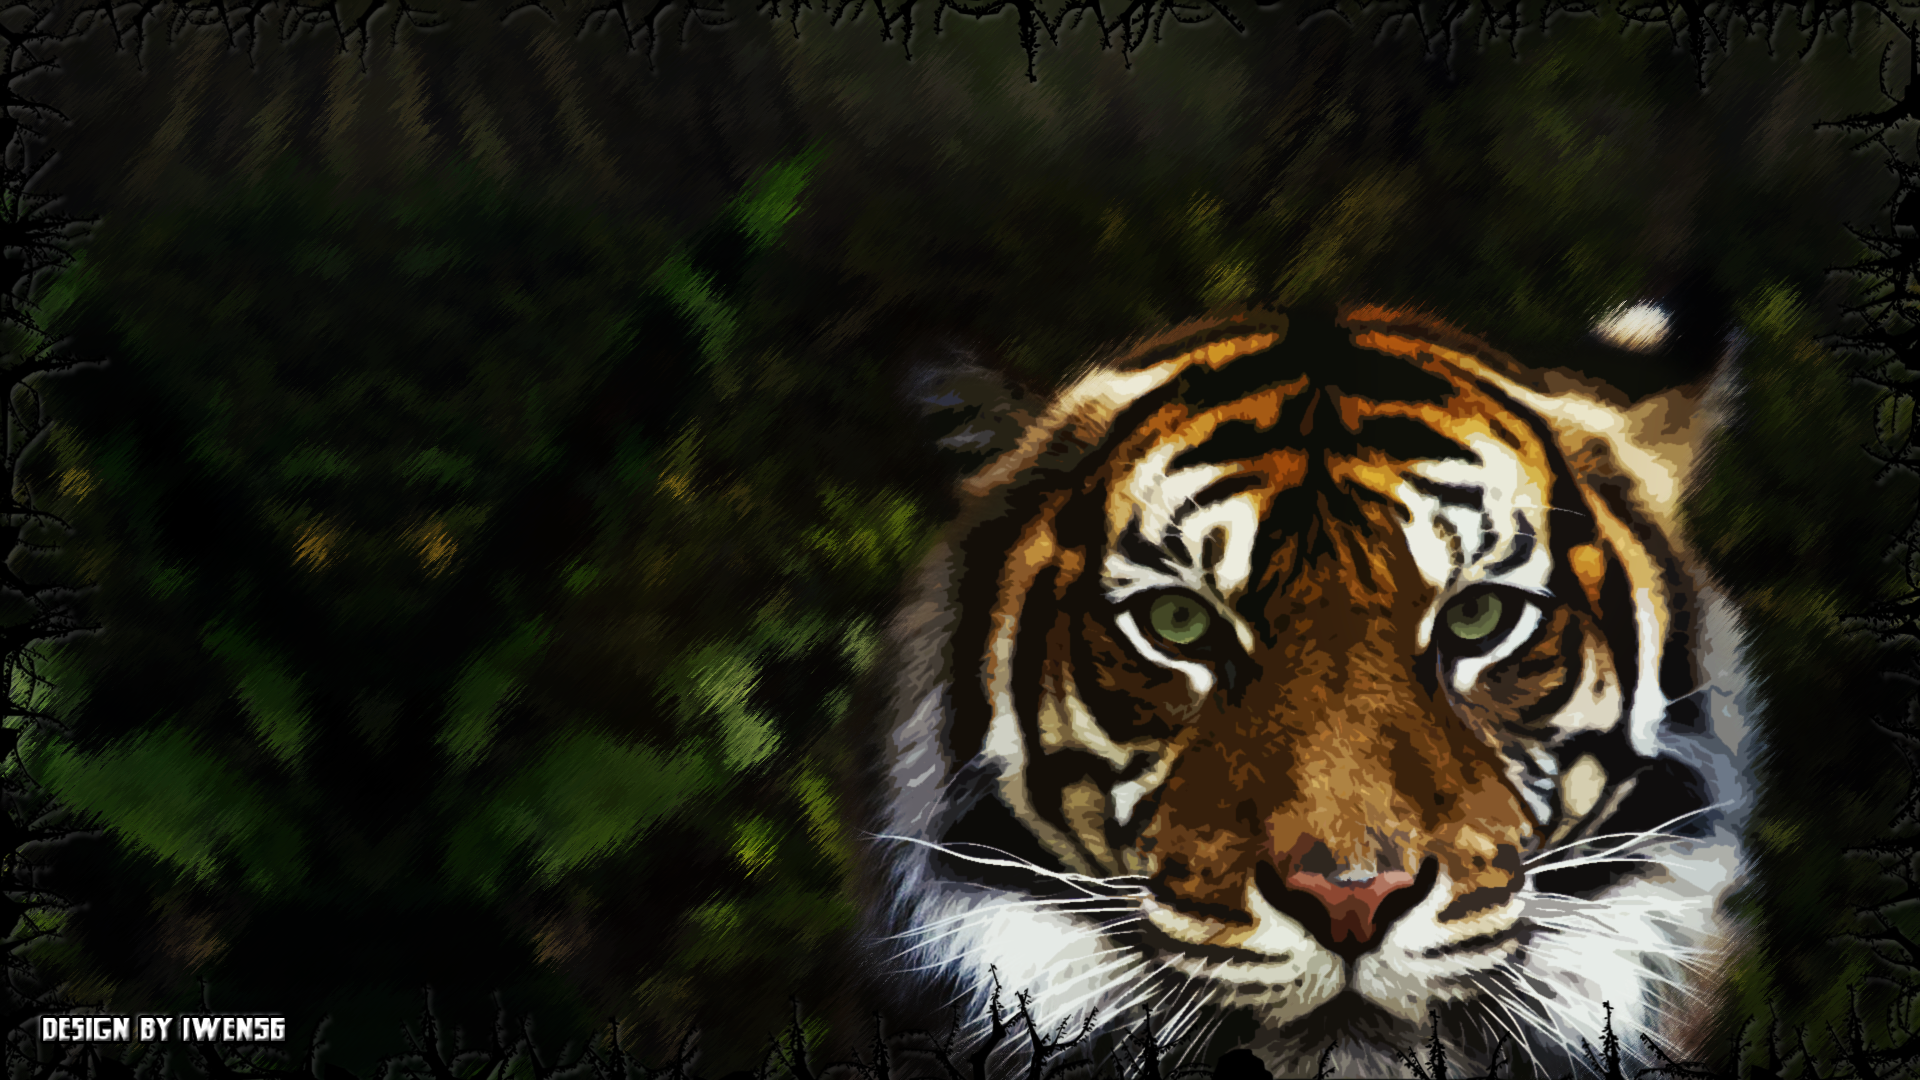 Wallpaper Tigre by iwen56 on DeviantArt